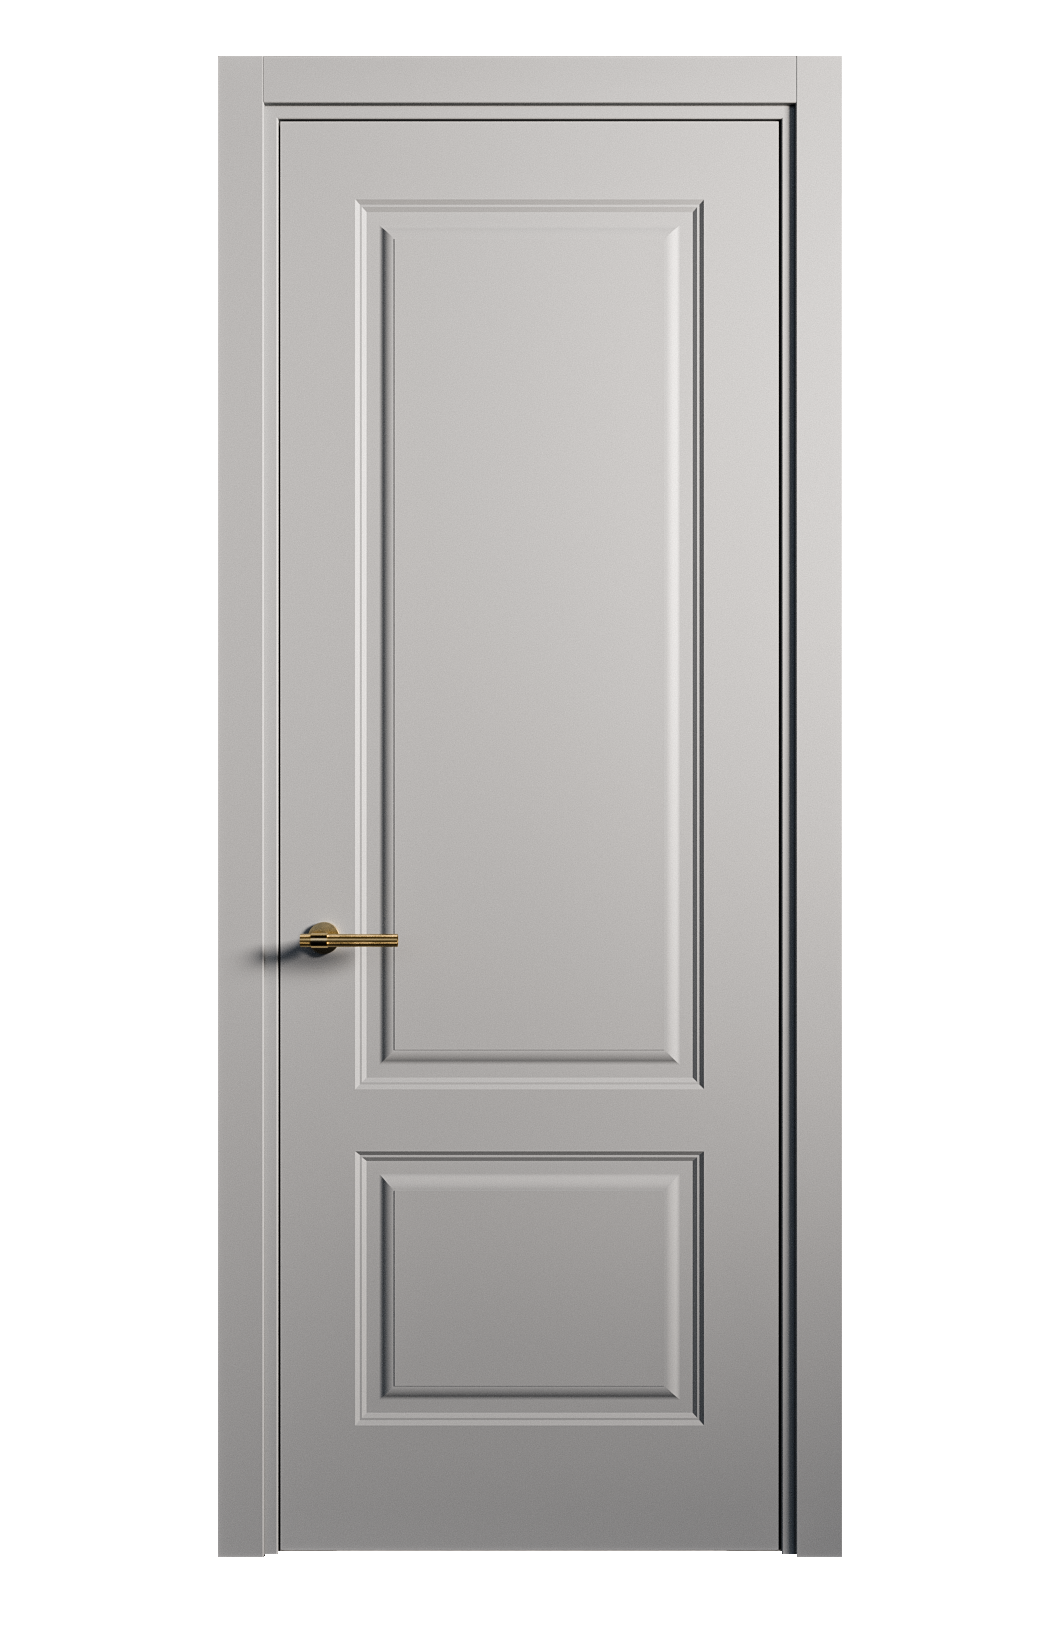 Межкомнатная дверь Вита-1 глухая эмаль ral 7040 26305